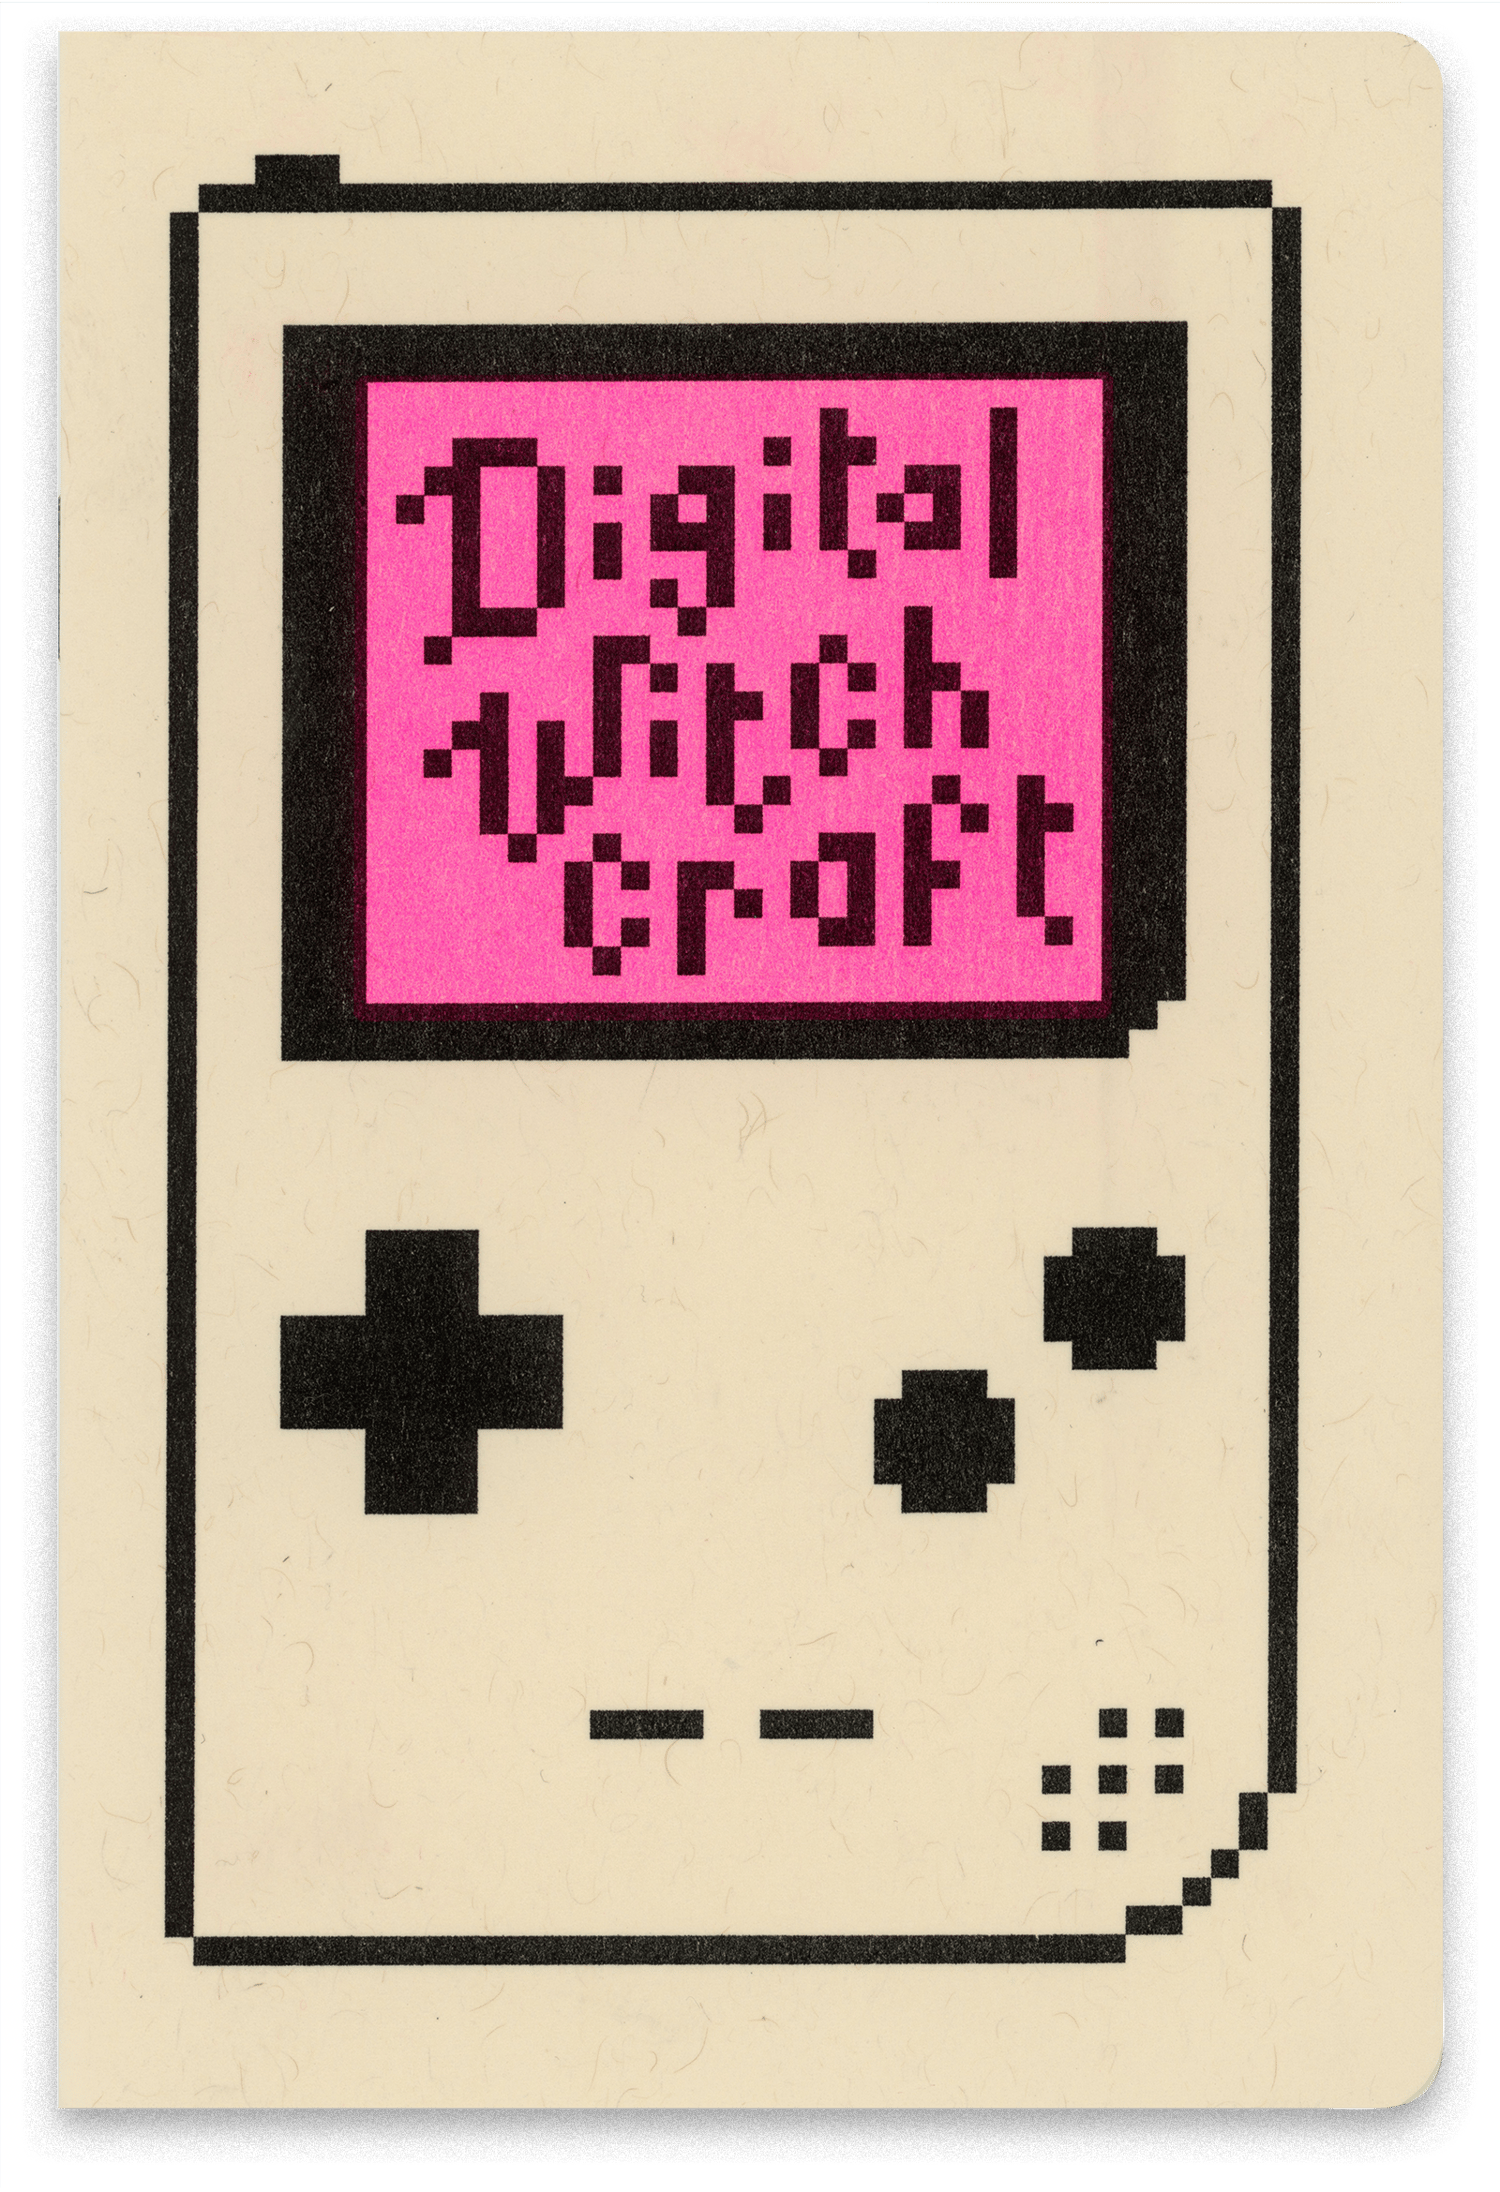 Digital Witchcraft